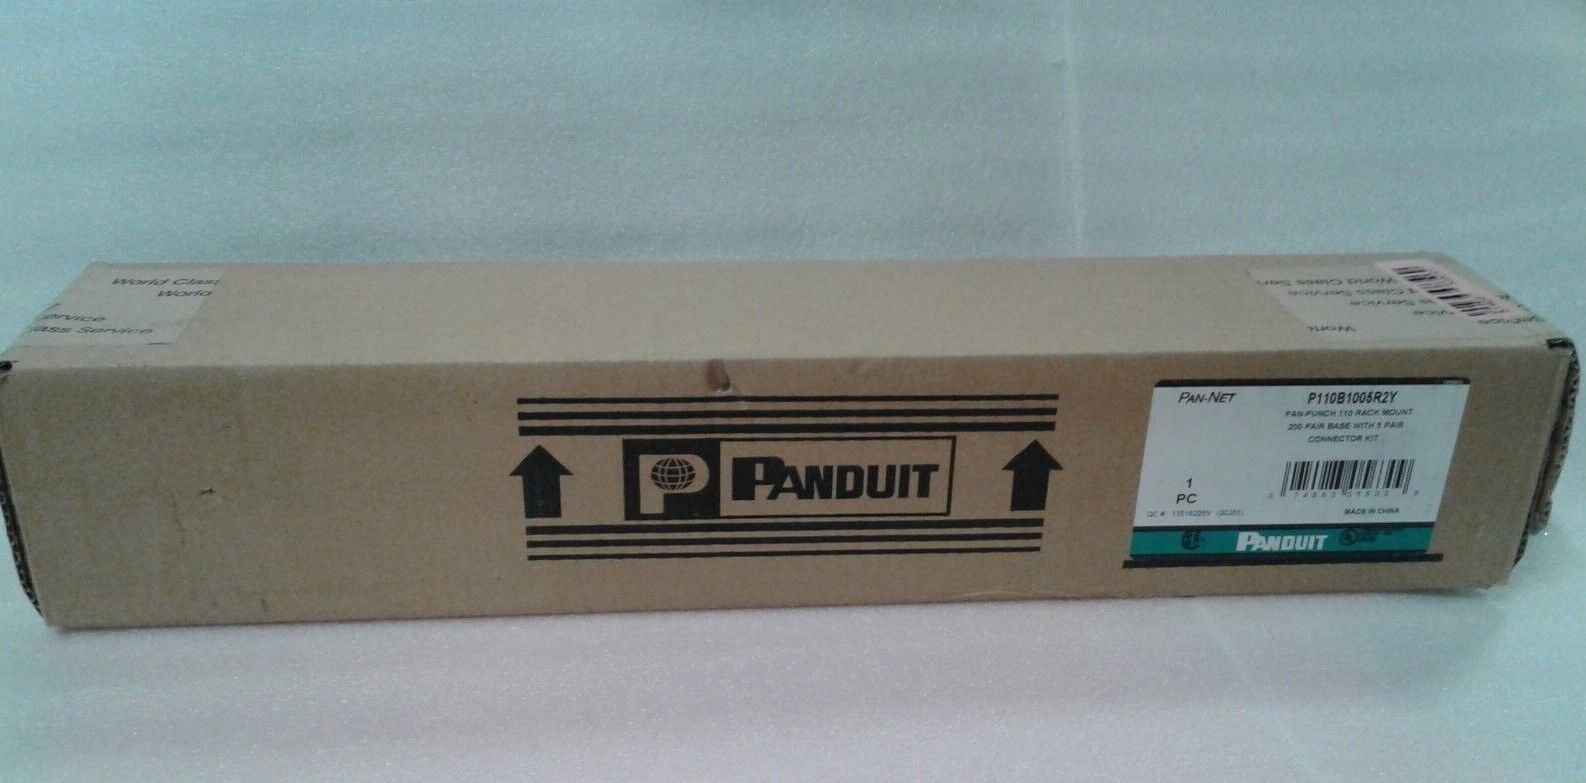 Panduit P110B1005R2Y Pan-Punch 110 Rack Mount 200 Pair Base   